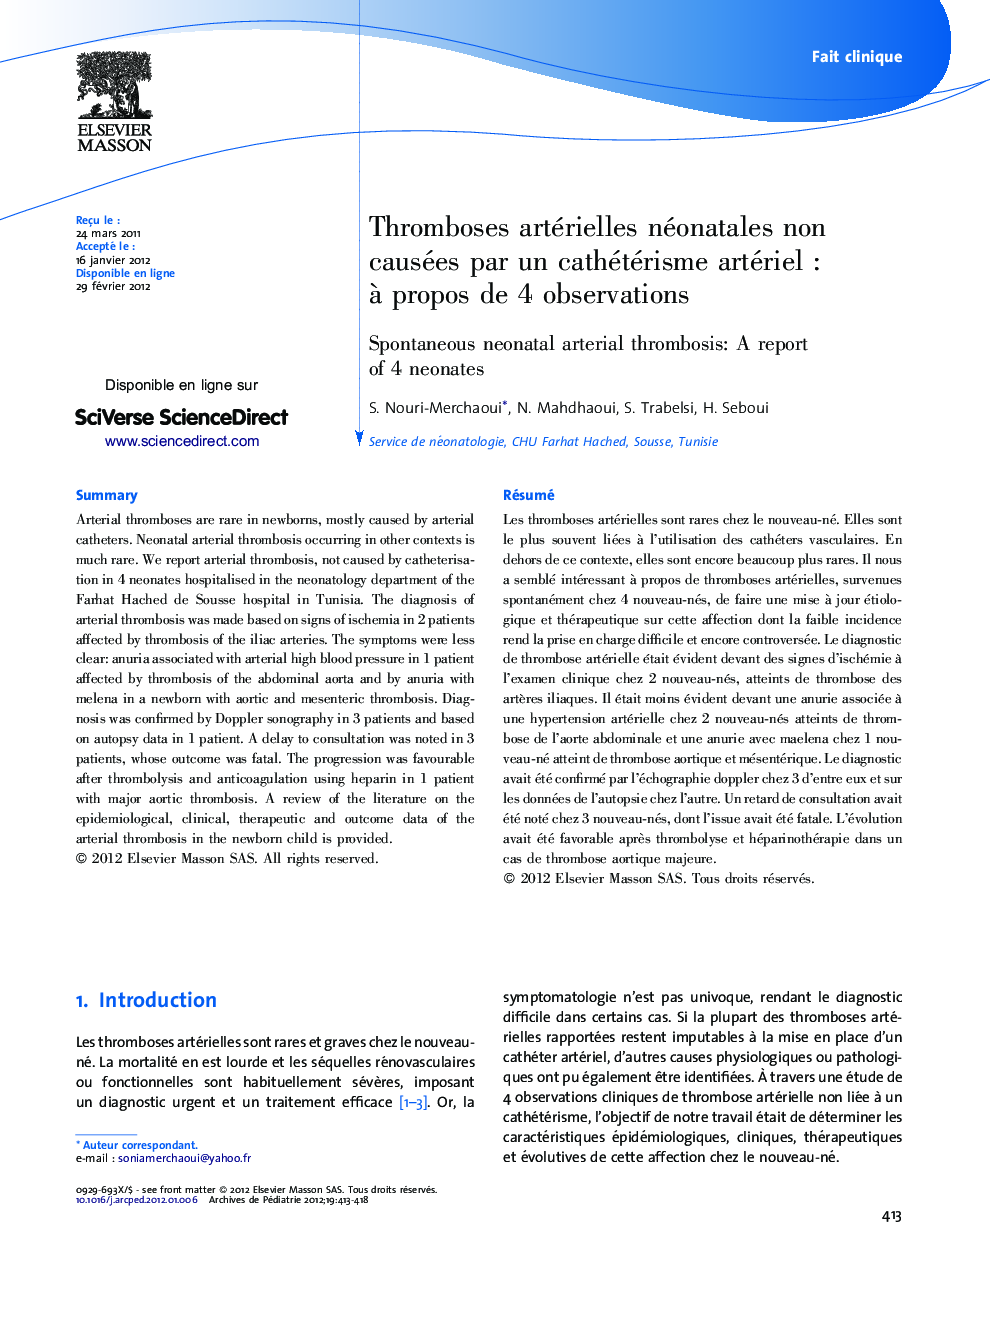 Thromboses artérielles néonatales non causées par un cathétérisme artériel : à propos de 4 observations